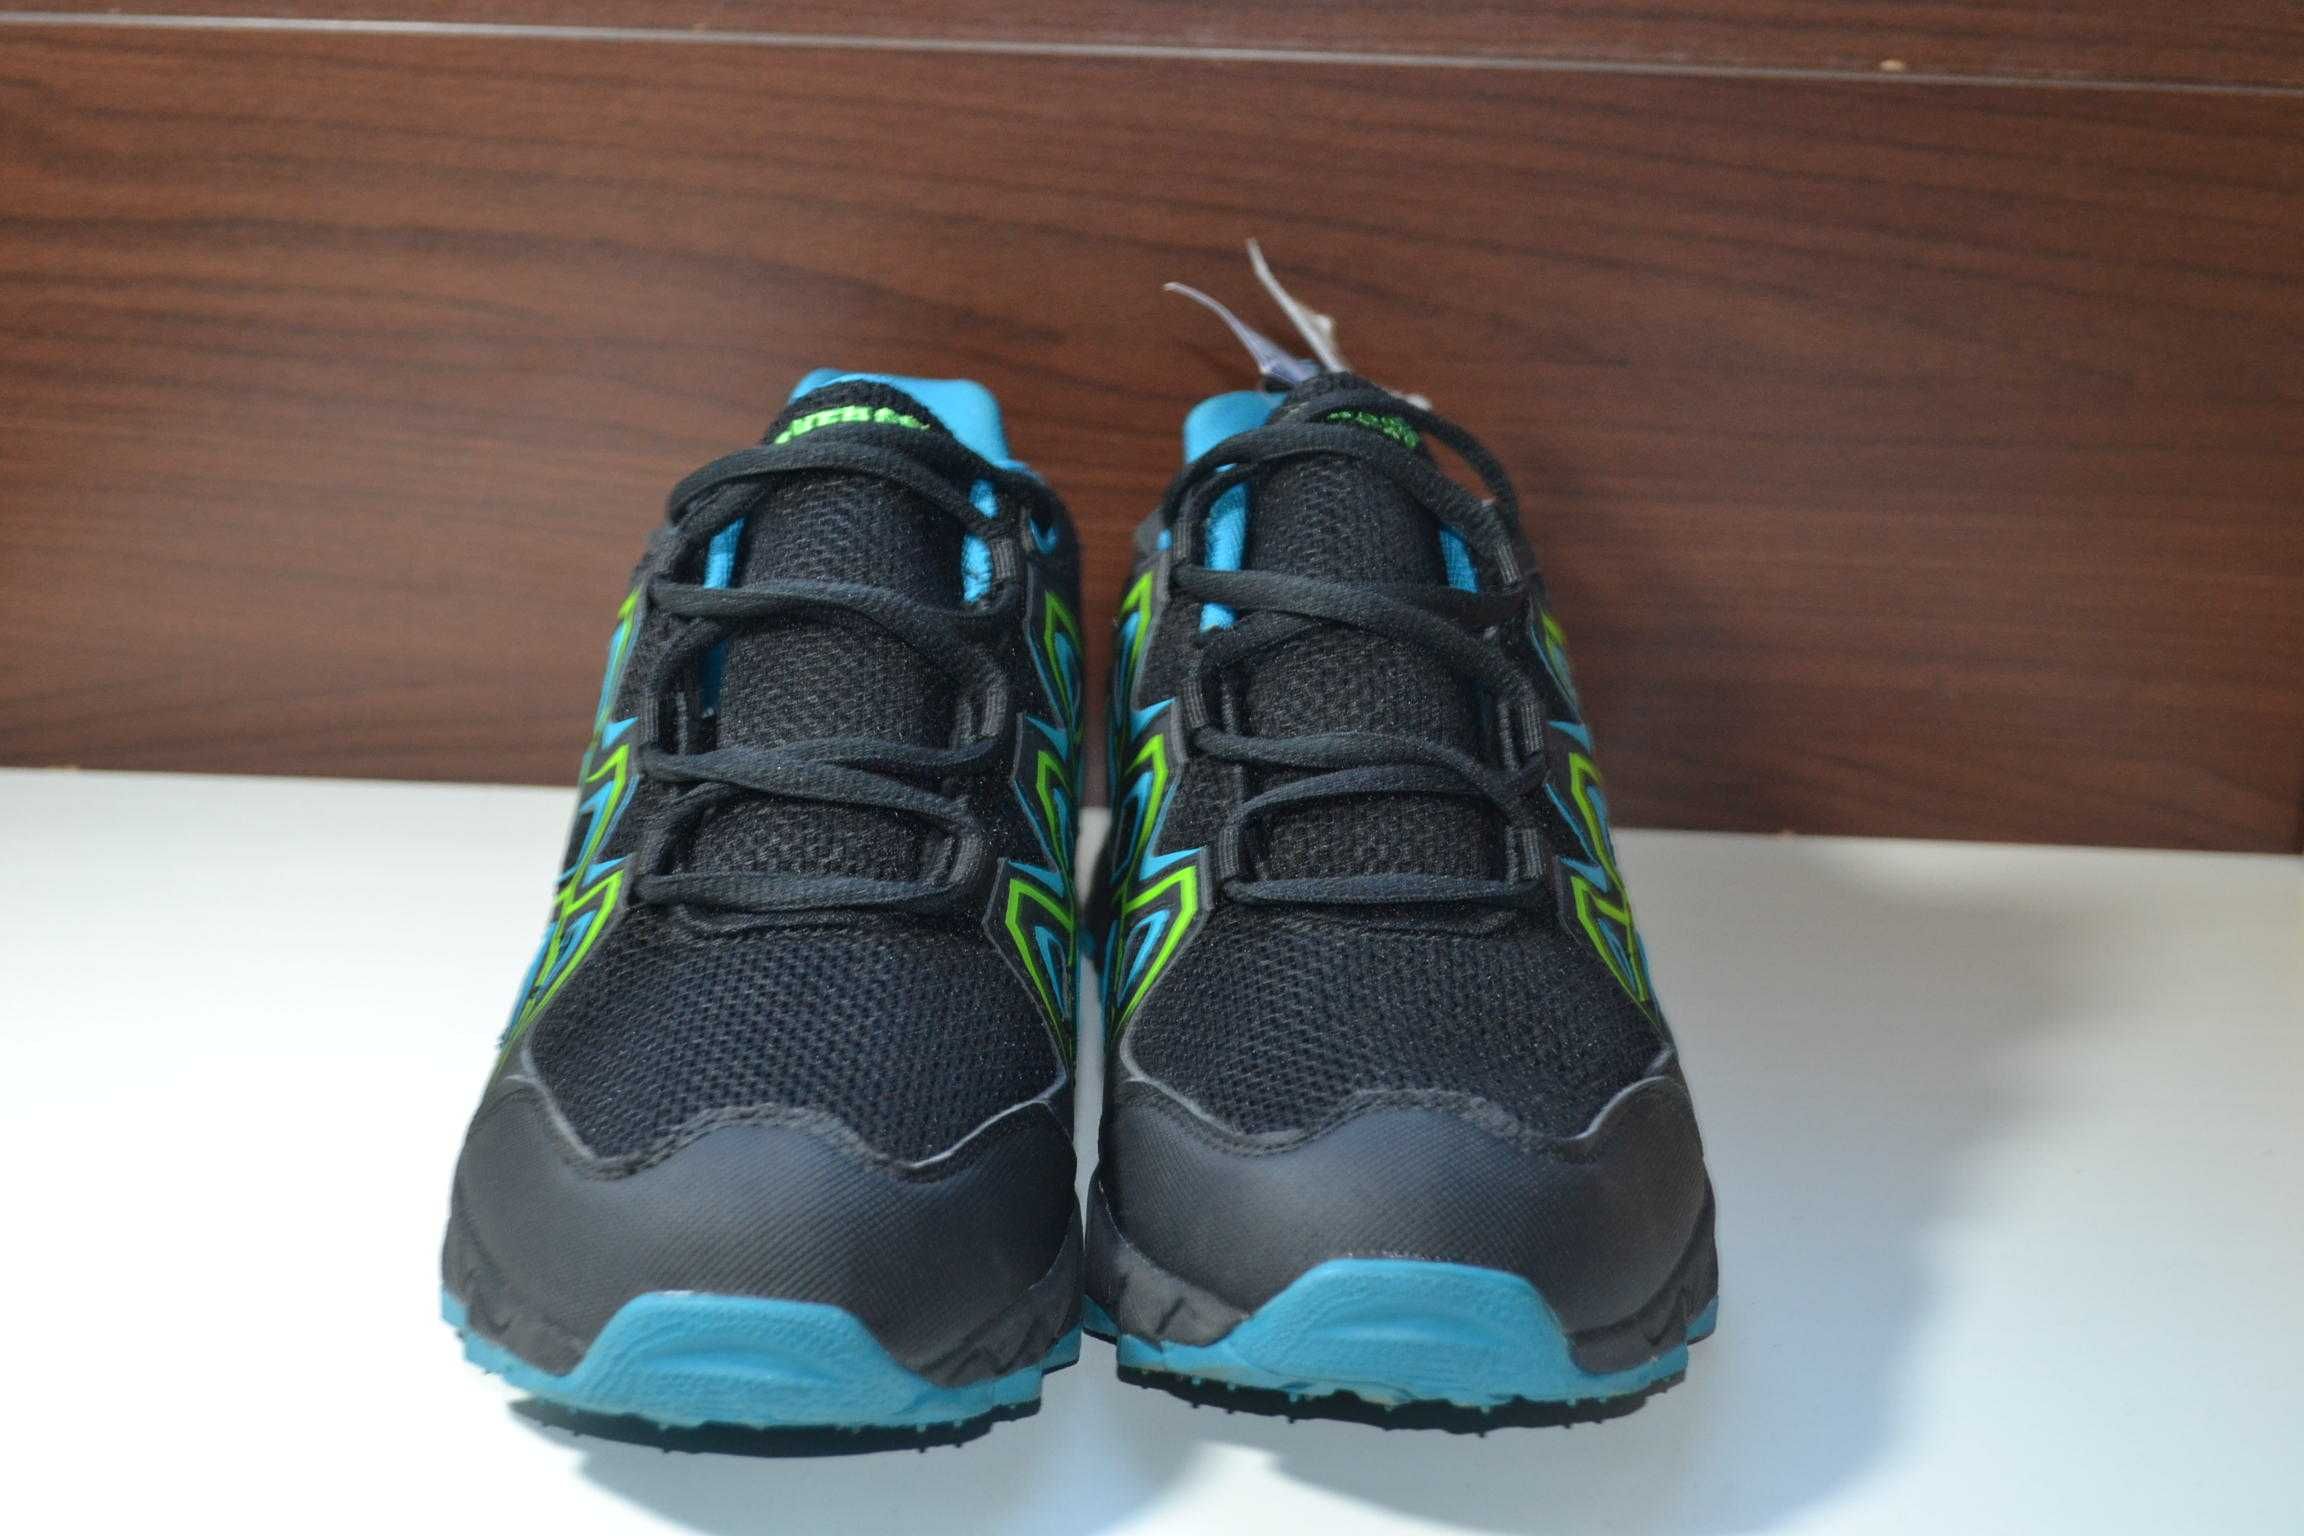 everest watertex 40р кроссовки ботинки с мембраной новые